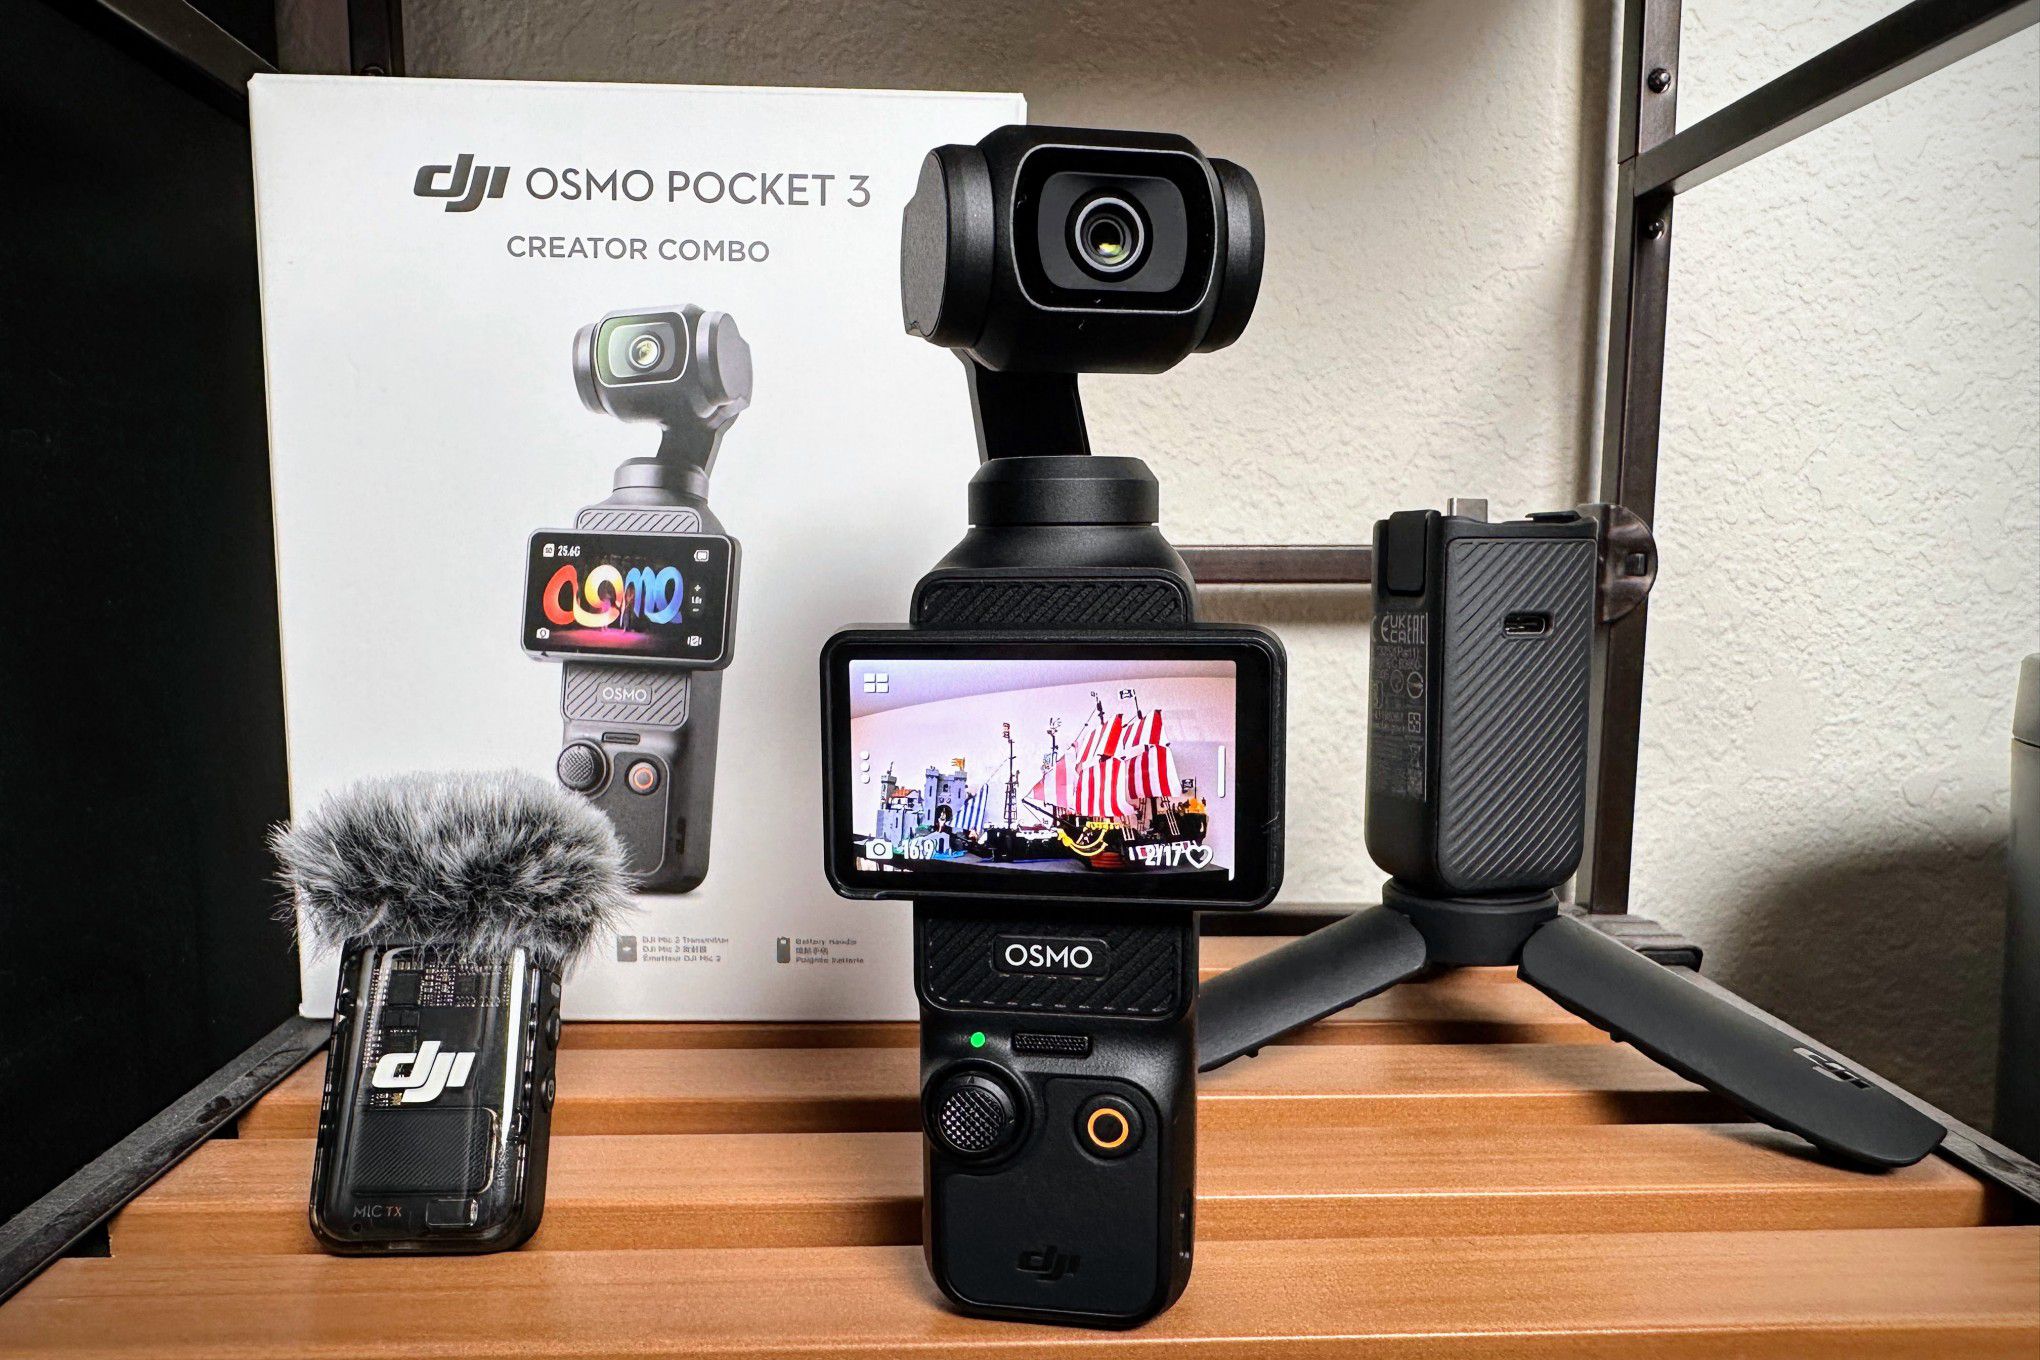 Máy quay chống rung DJI Pocket 3 Basic /  DJI Pocket 3 Creator Combo | Chính hãng